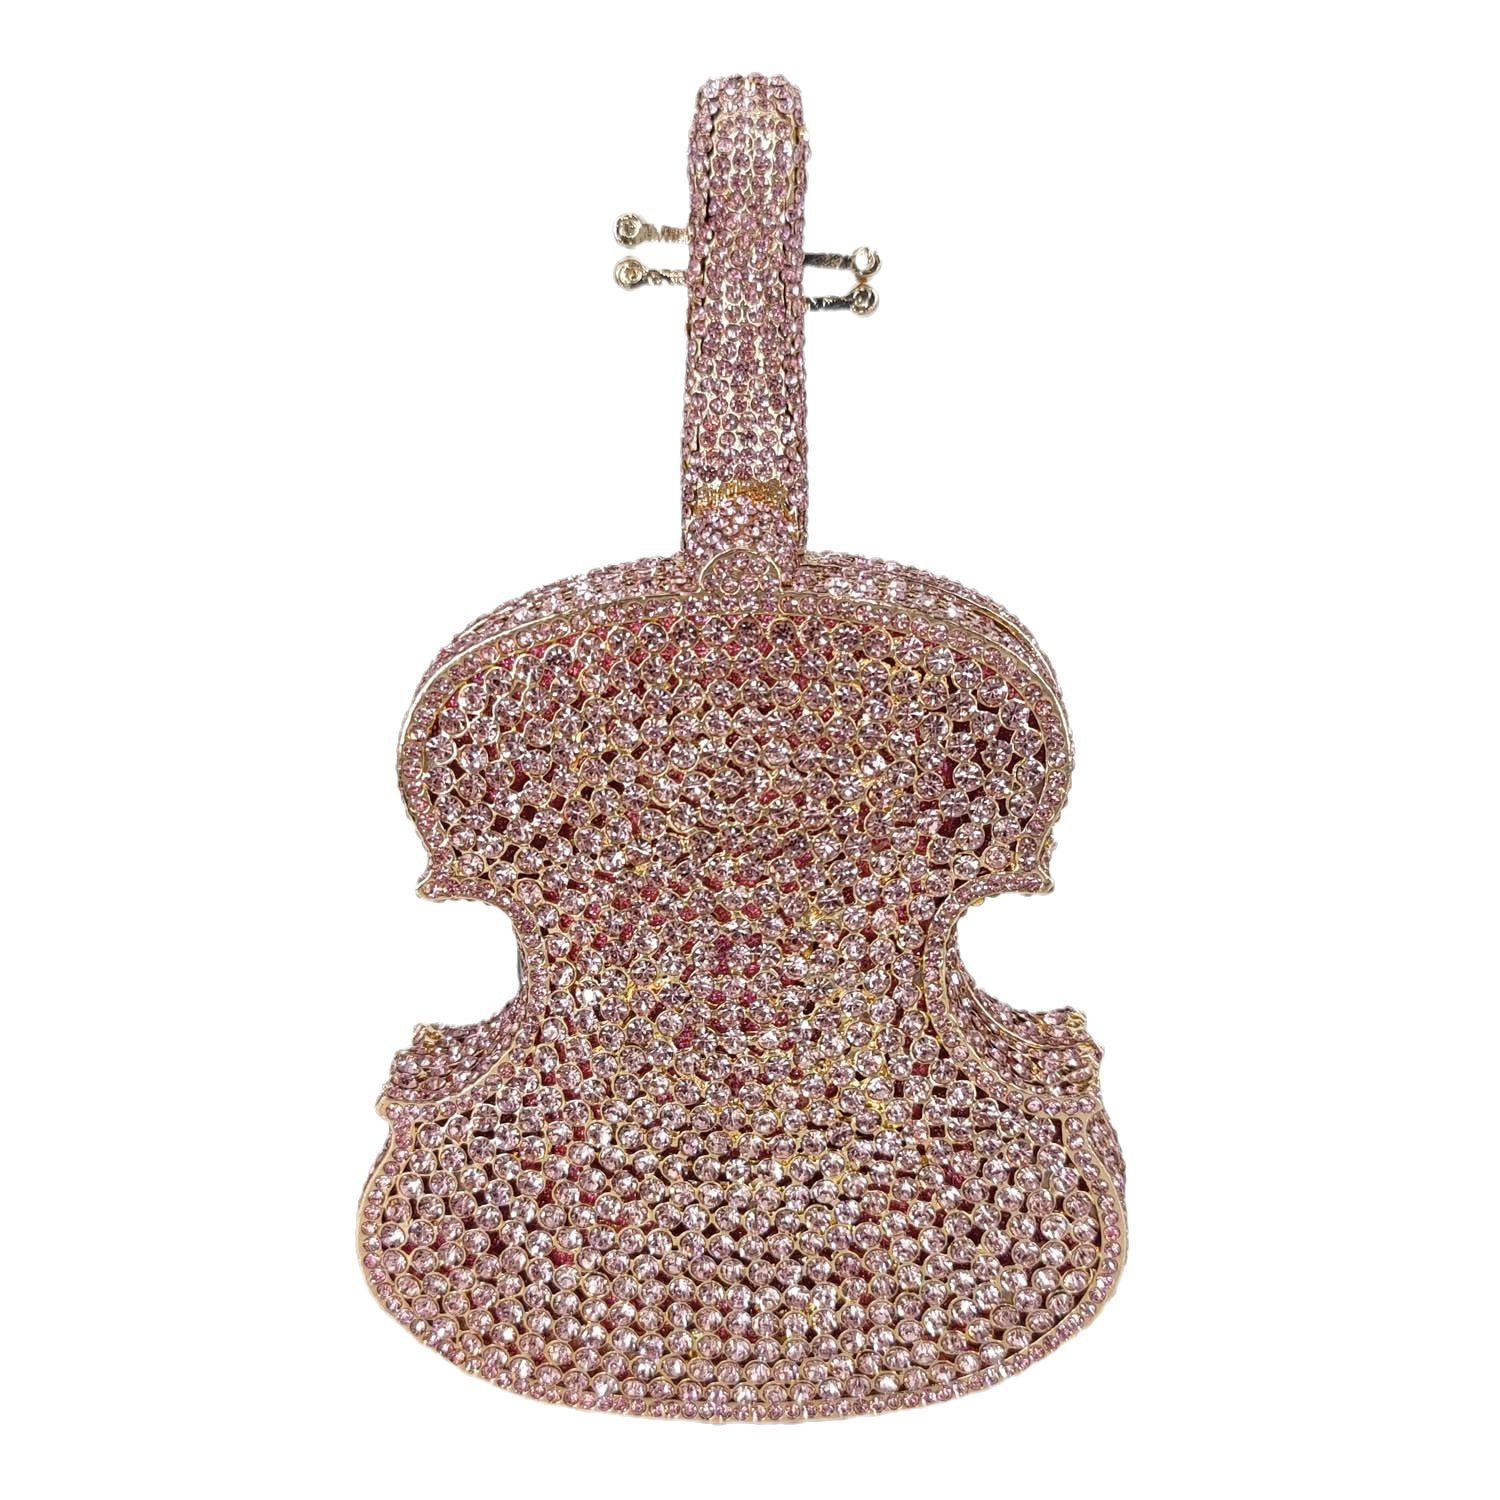 Violin Crystal Clutch Handbag Fashion Closet Clothing